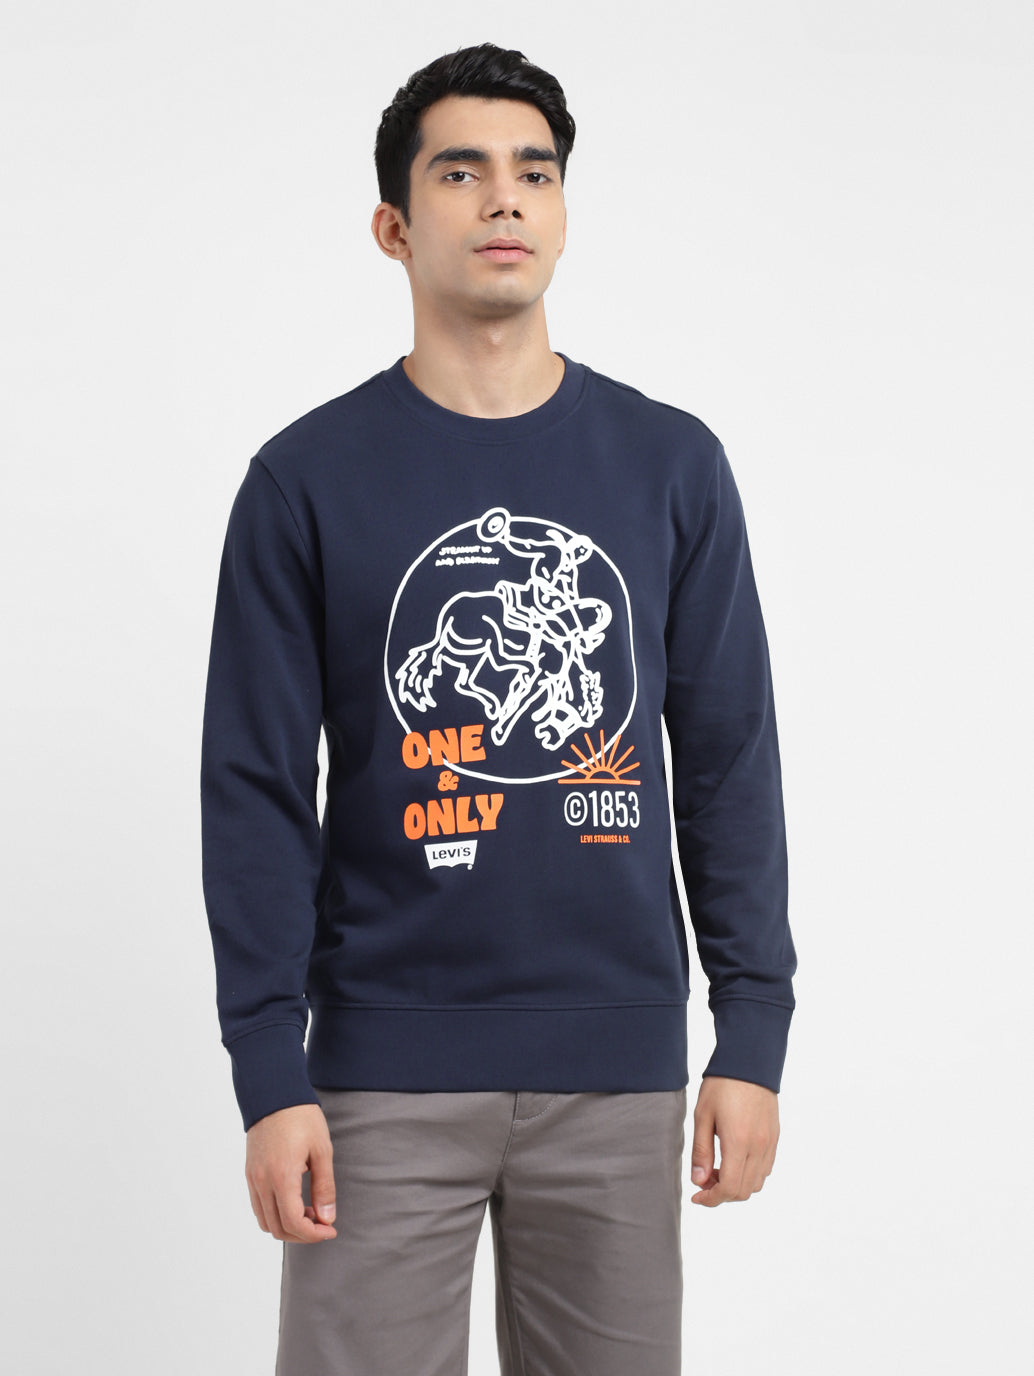 Men's Graphic Print Crew Neck Sweatshirt Navy